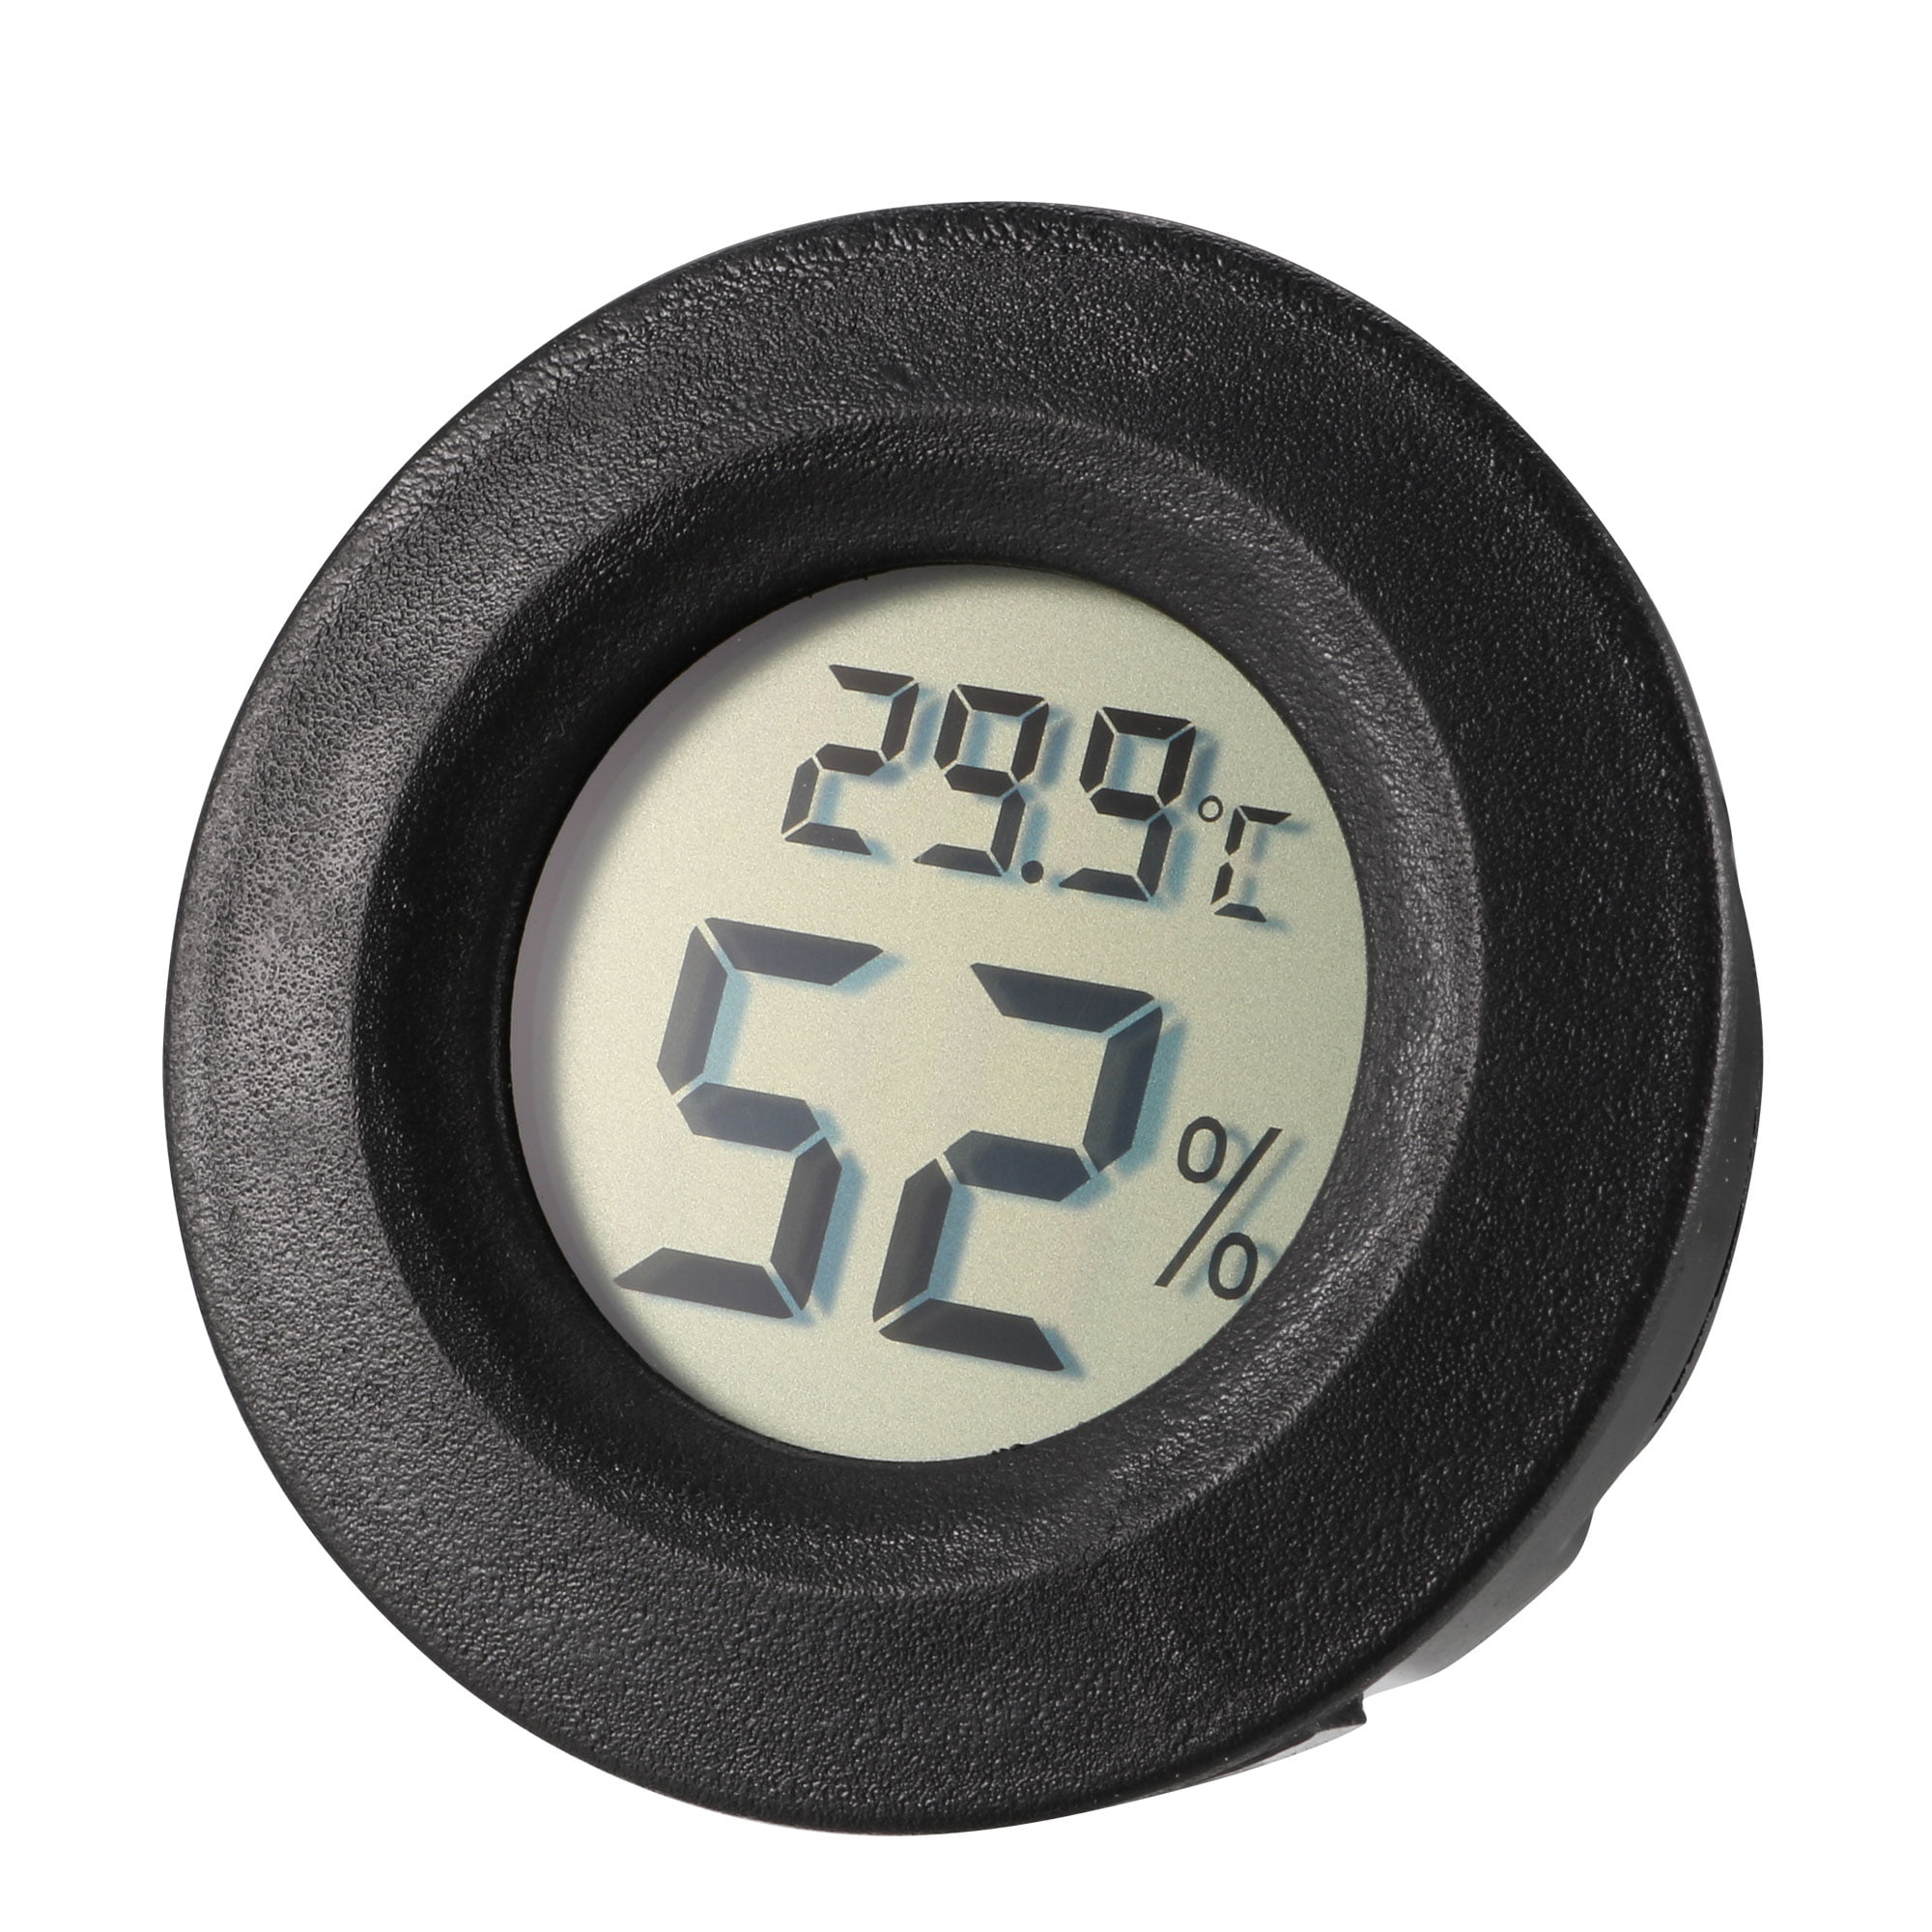 temperature meter